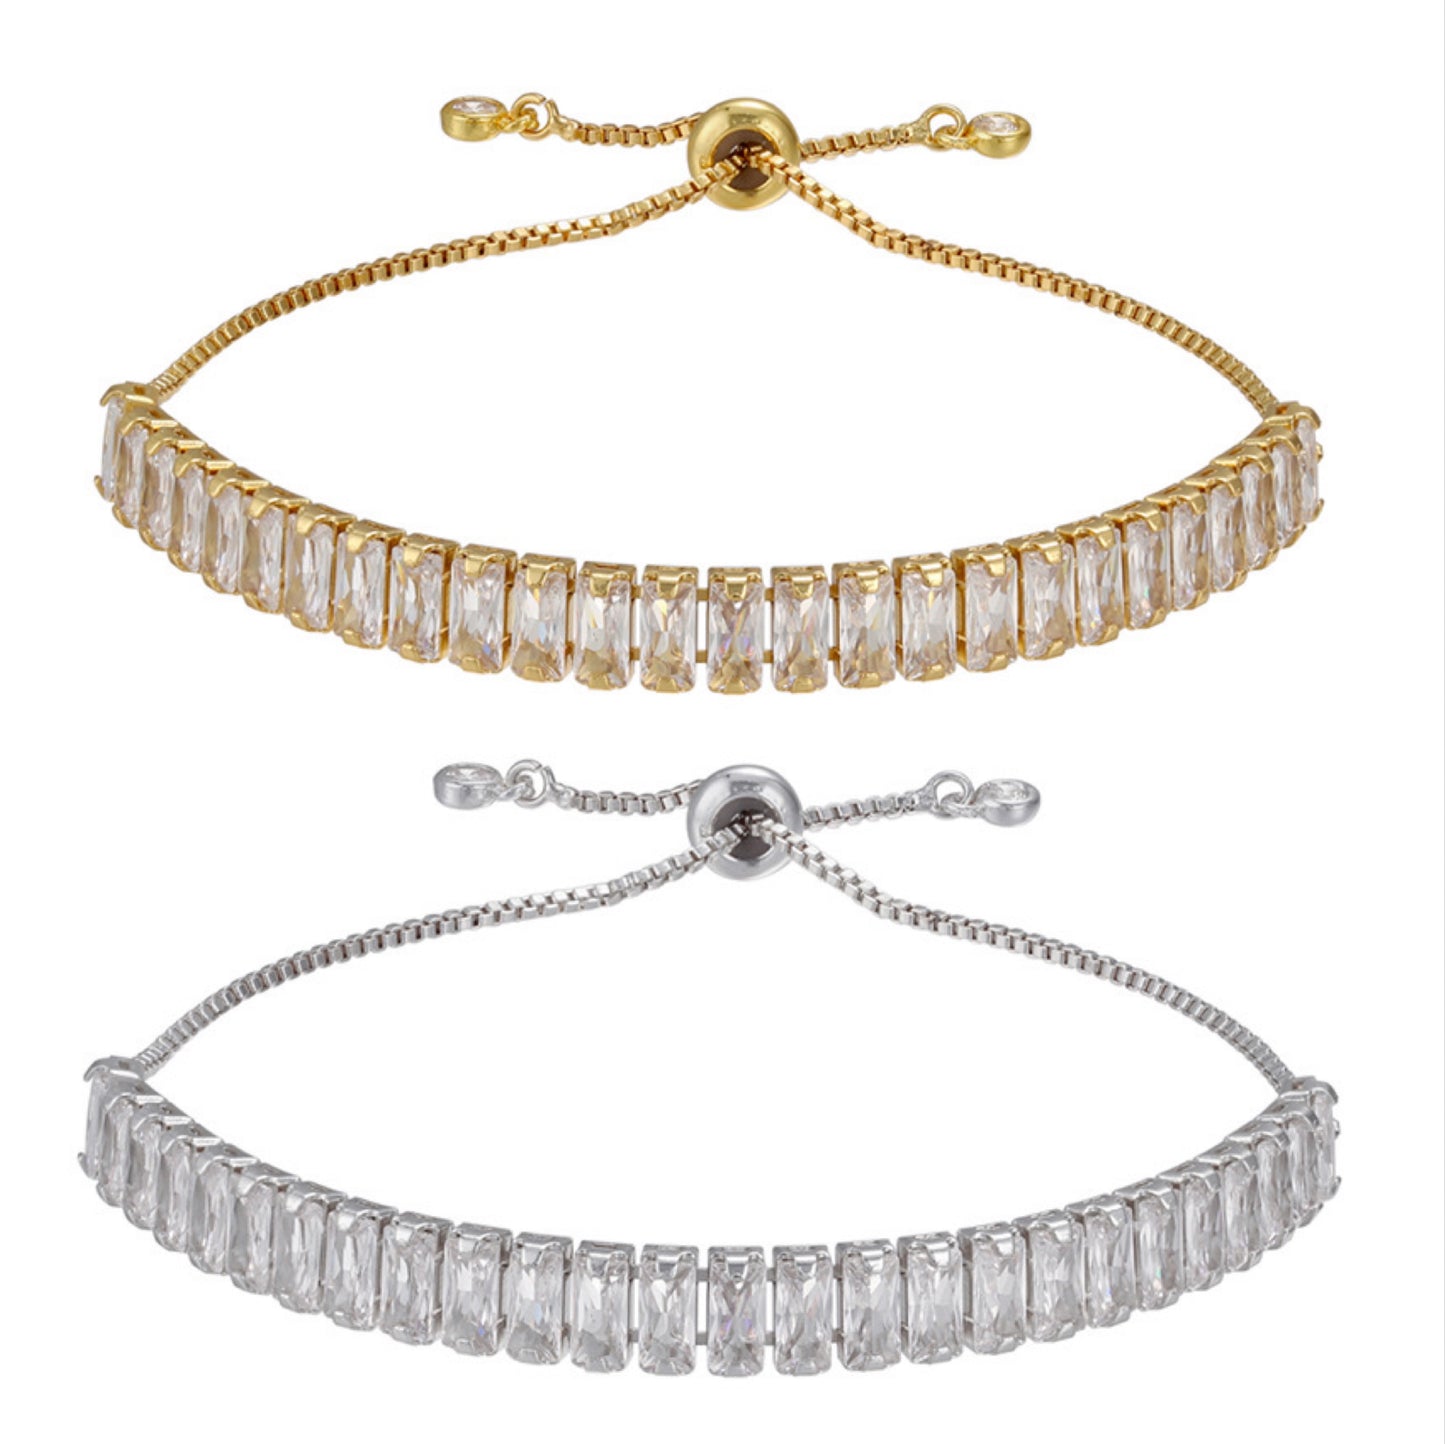 5pcs/lot 7mm Clear CZ Gold & Silver Adjustable Bracelet for Women Mix Colors Women Bracelets Charms Beads Beyond